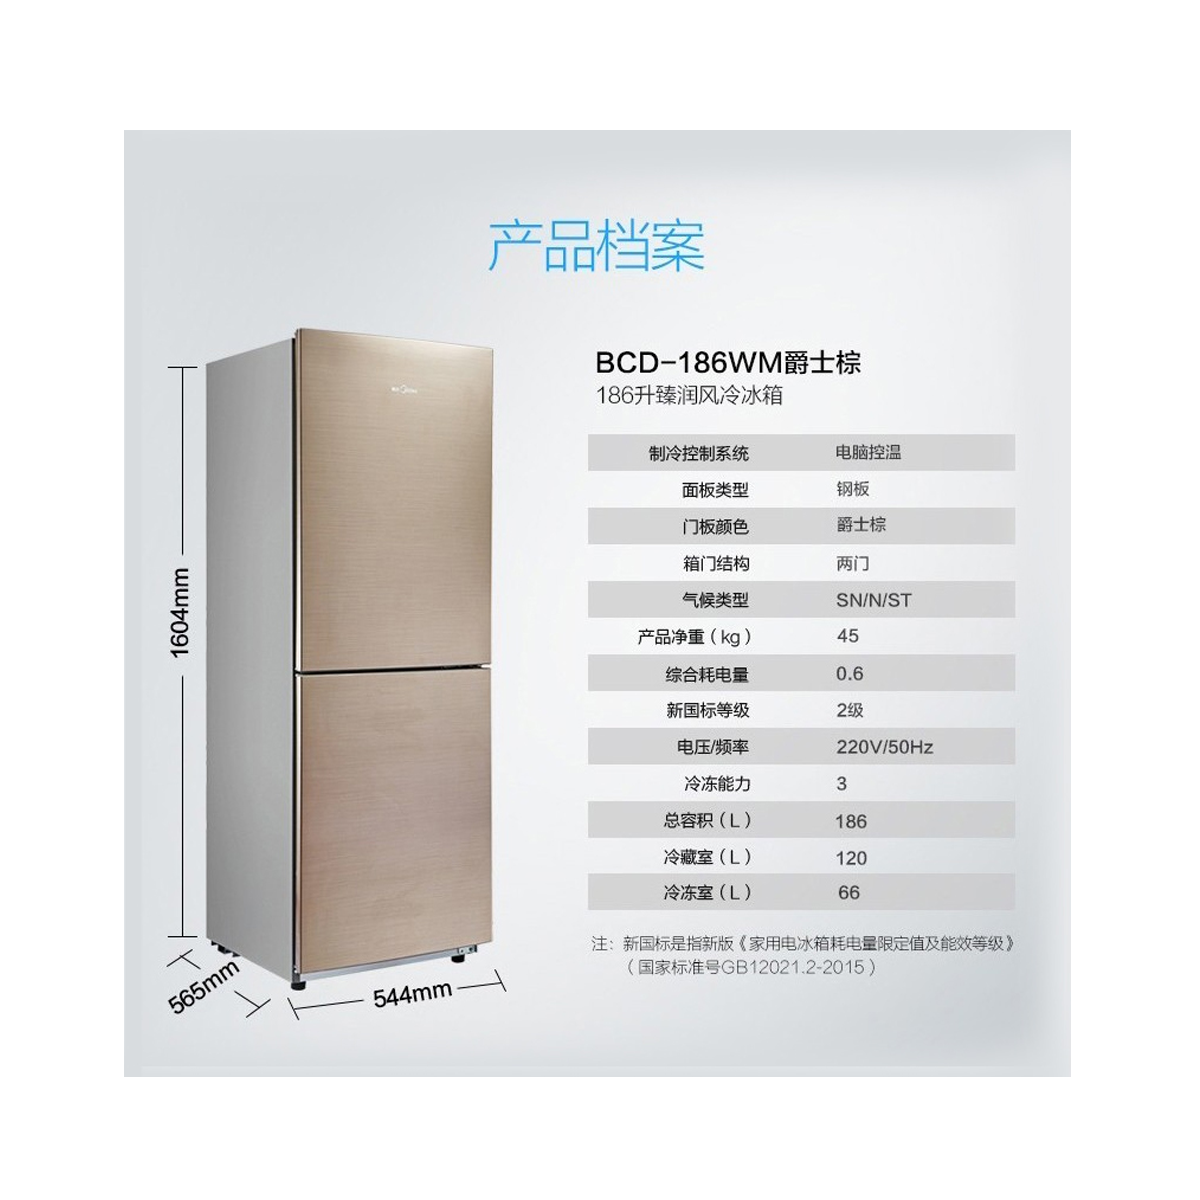 【美的BCD-323WTPM(E)】美的冰箱,BCD-323WTPM(E),官方报价_规格_参数_图片-美的商城